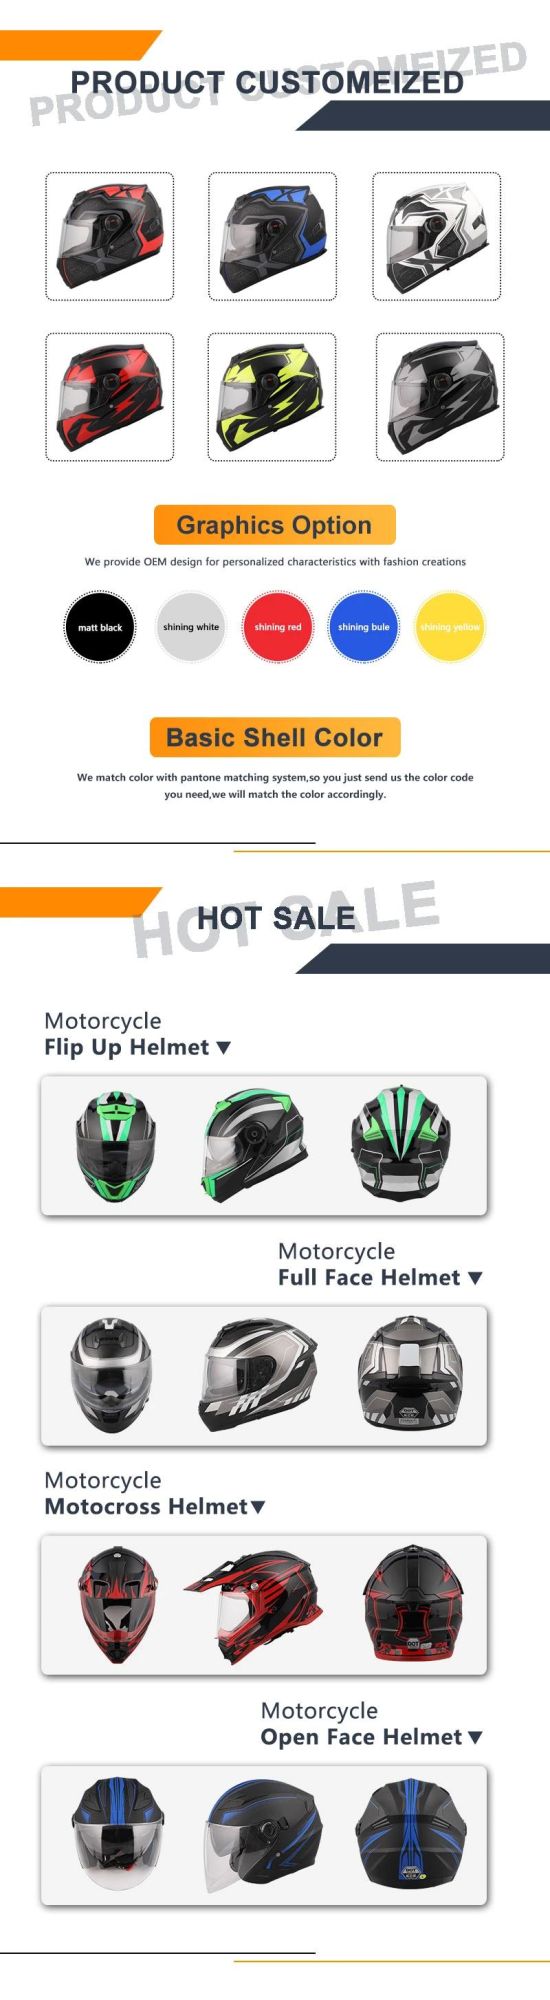 DOT/ECE Full Face Helmets Motorcycle Helmet Cascos De Moto Cascos Integrales off Road Helmets